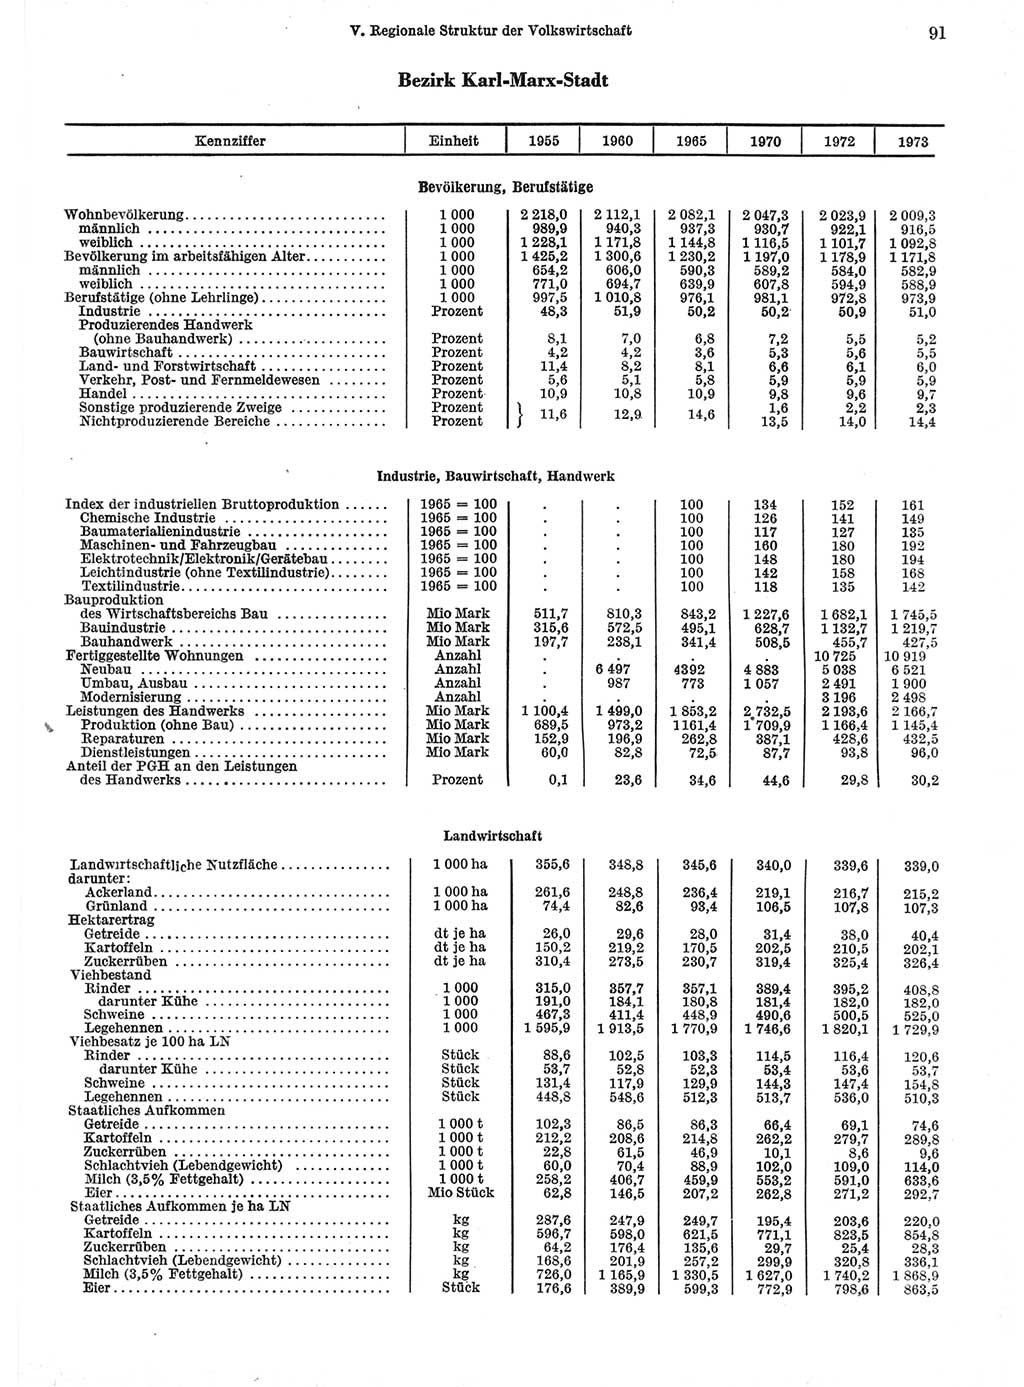 Statistisches Jahrbuch der Deutschen Demokratischen Republik (DDR) 1974, Seite 91 (Stat. Jb. DDR 1974, S. 91)